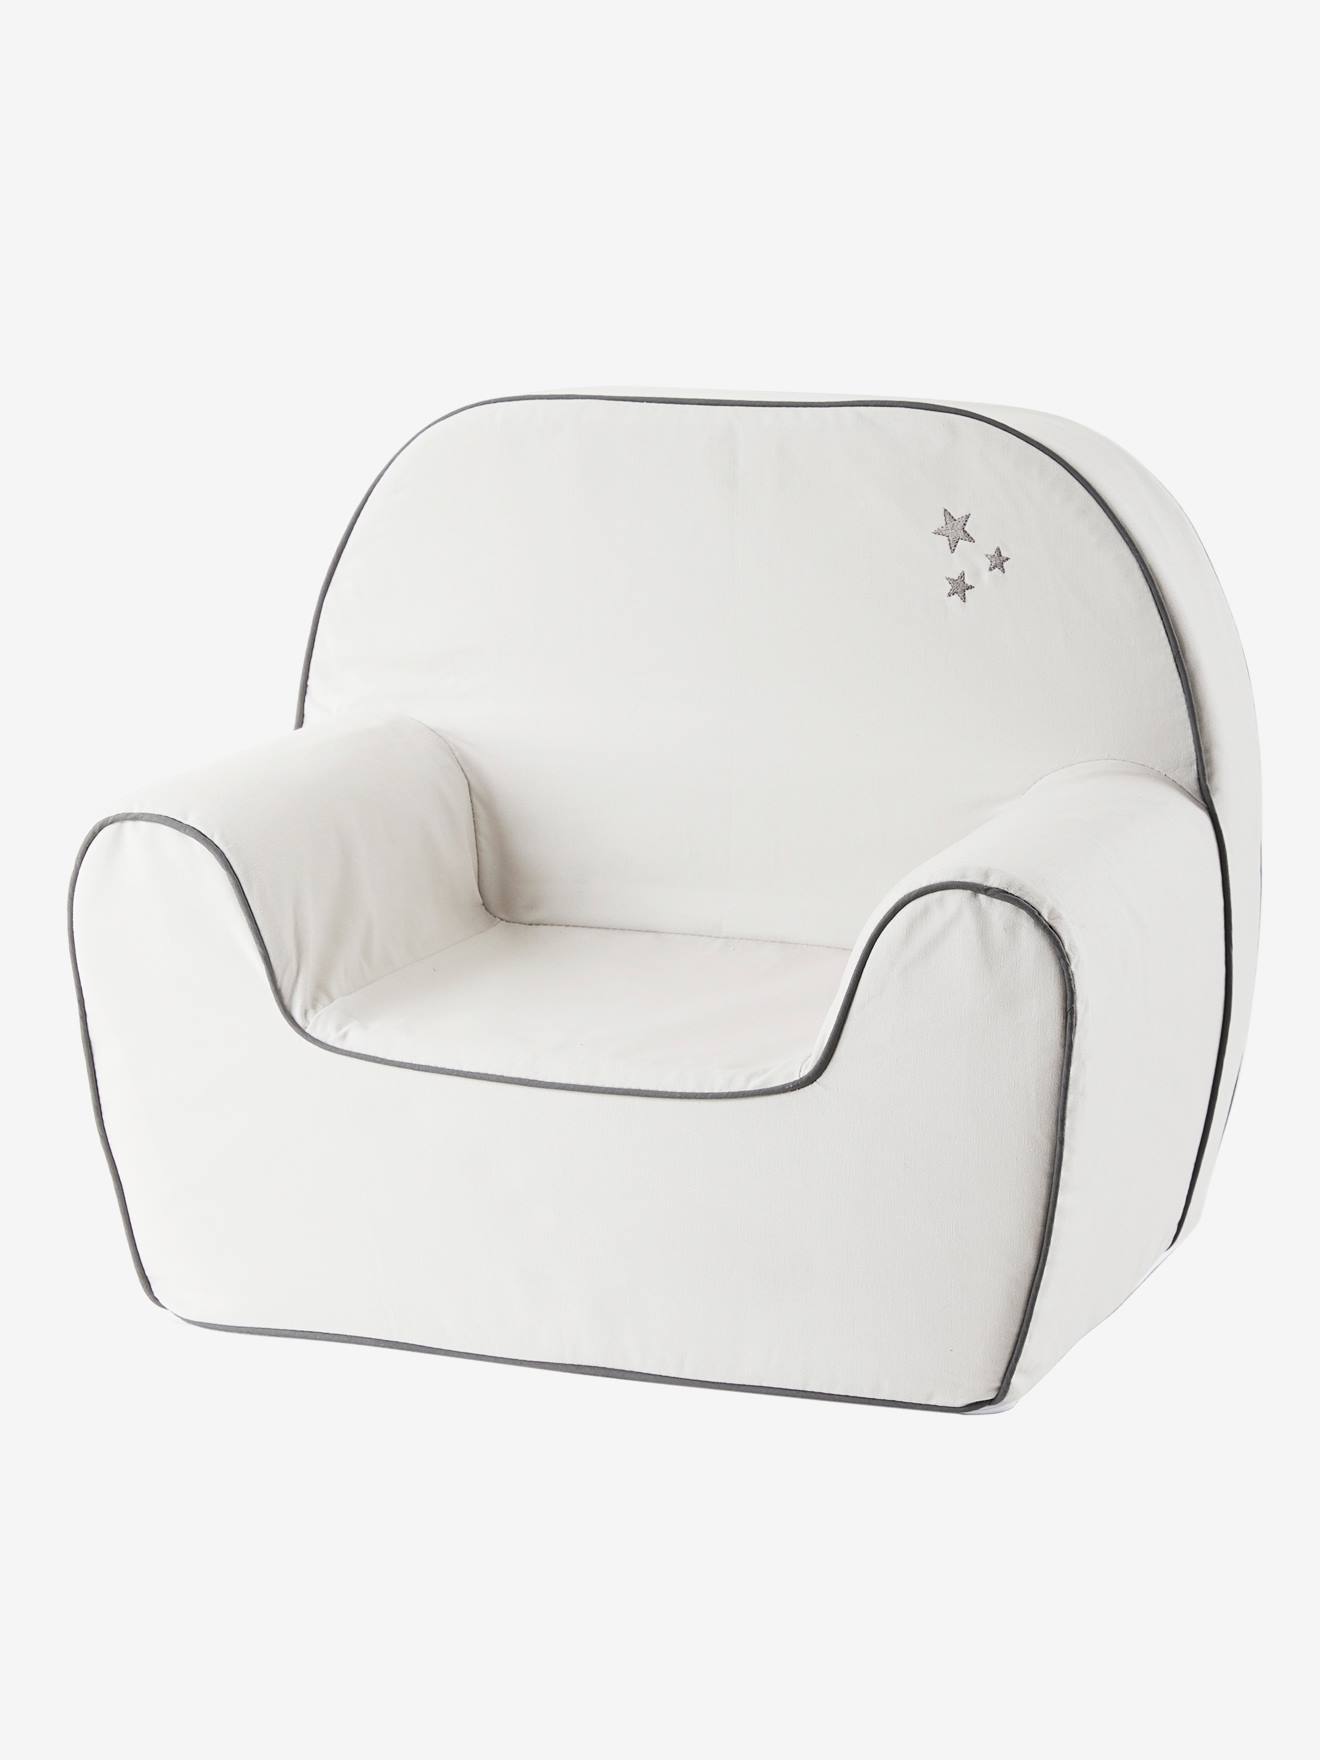 Foam Armchair For Babies Grey Light Mixed Color Bedroom